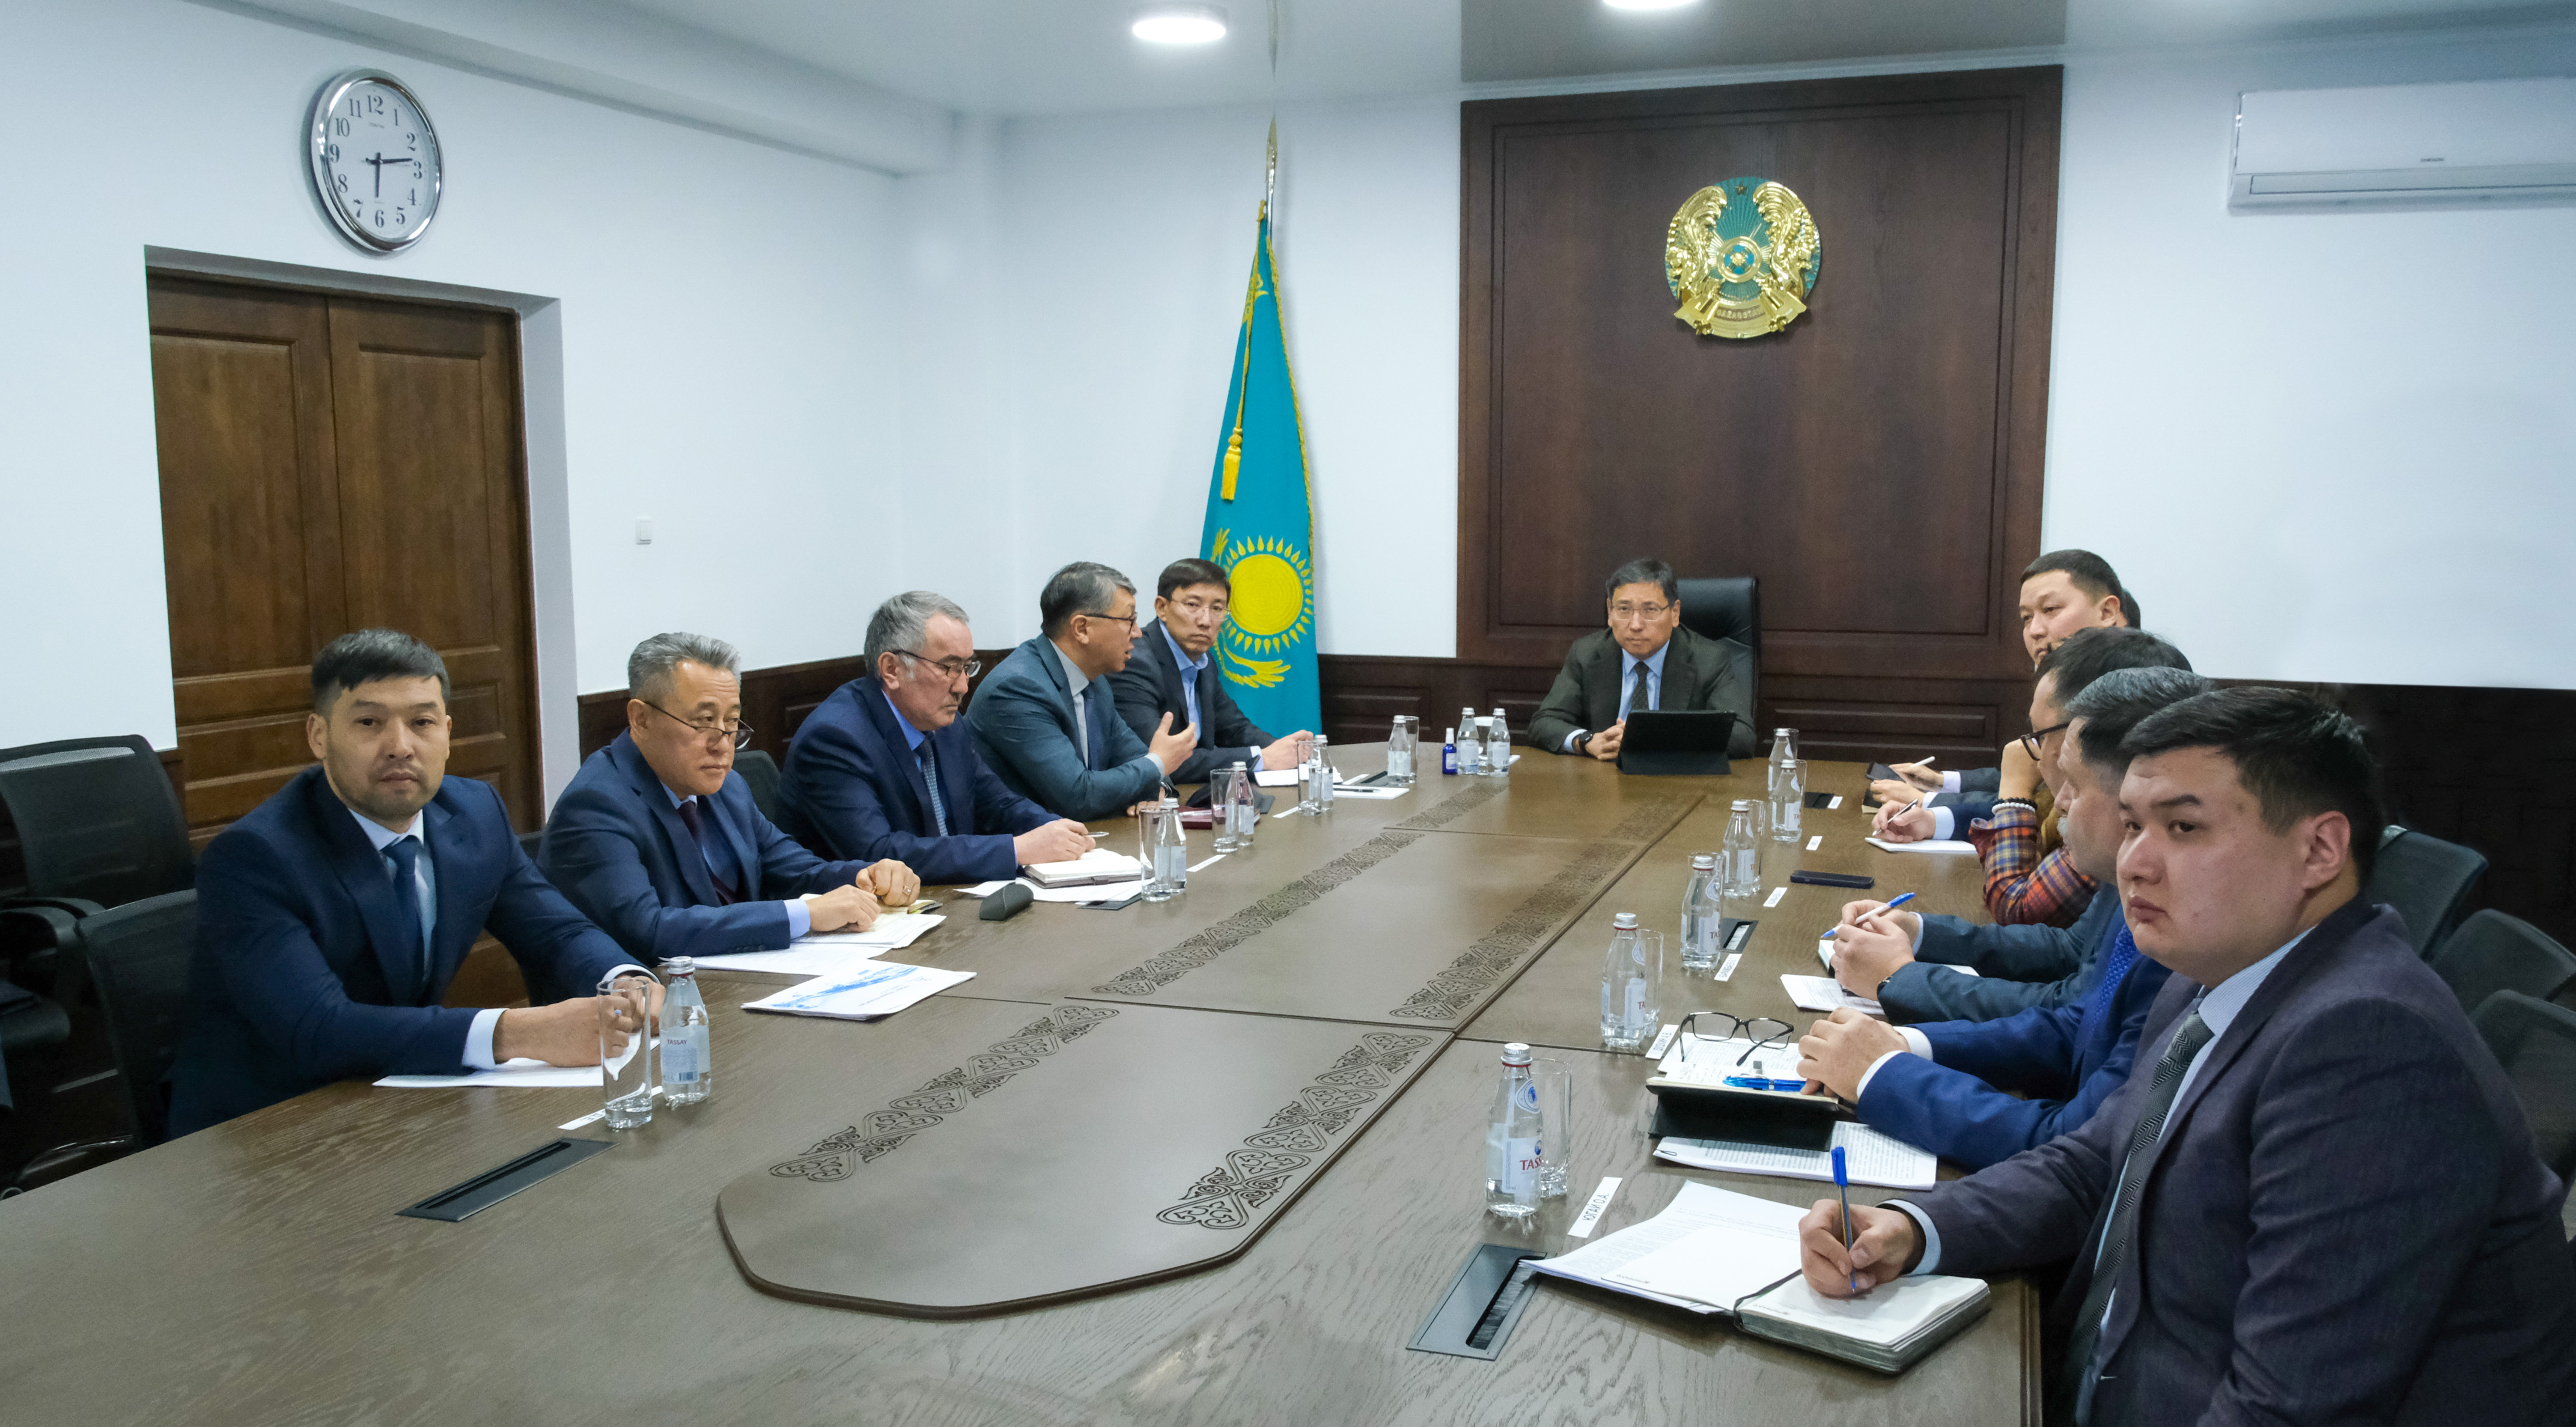 Аким города ознакомился с планом развития государственного коммунального предприятия «Алматы Су»